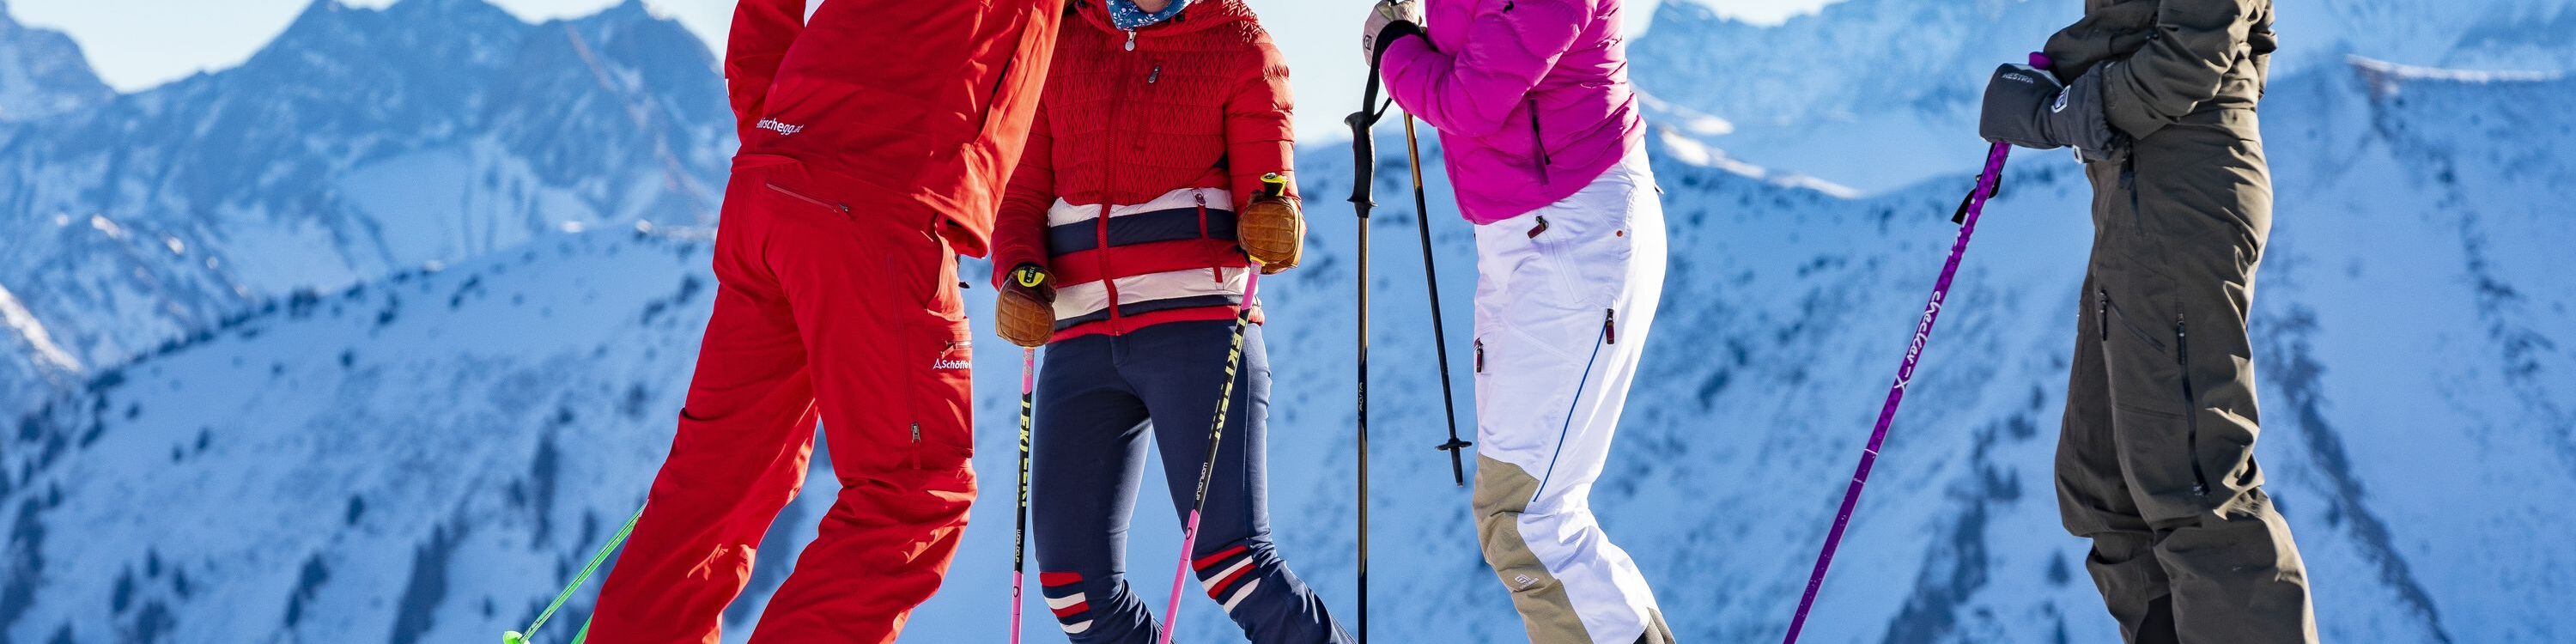 Skilehrer und Teilnehmerin klatschen ein auf der Piste 